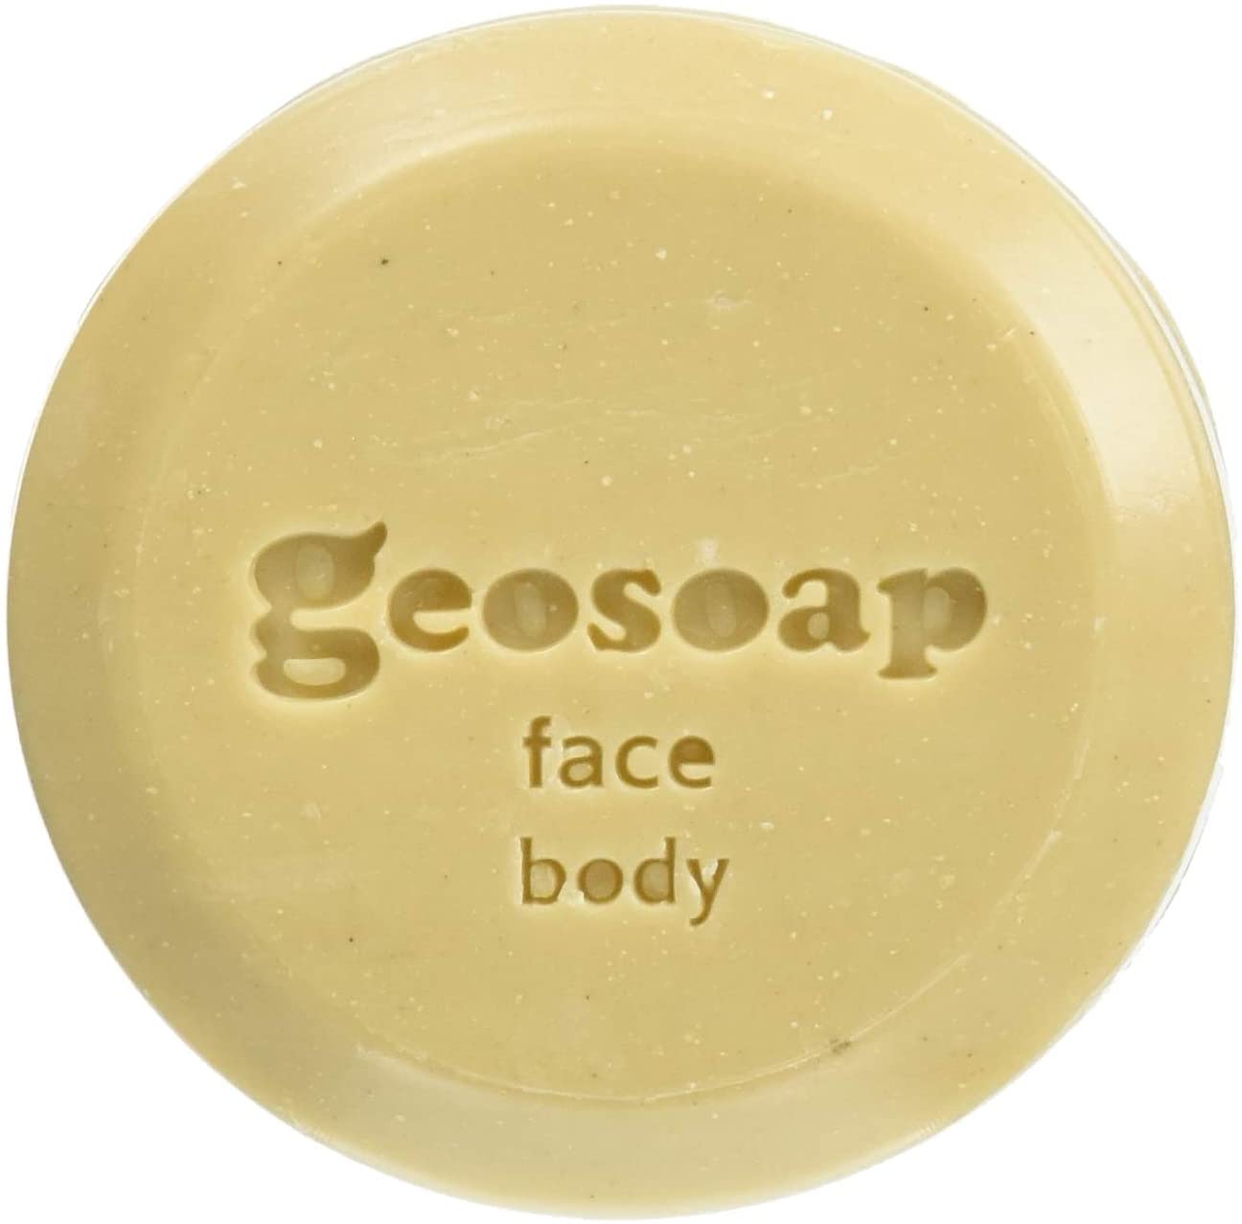 geosoap(ジオソープ) フェイス＆ボディの商品画像3 